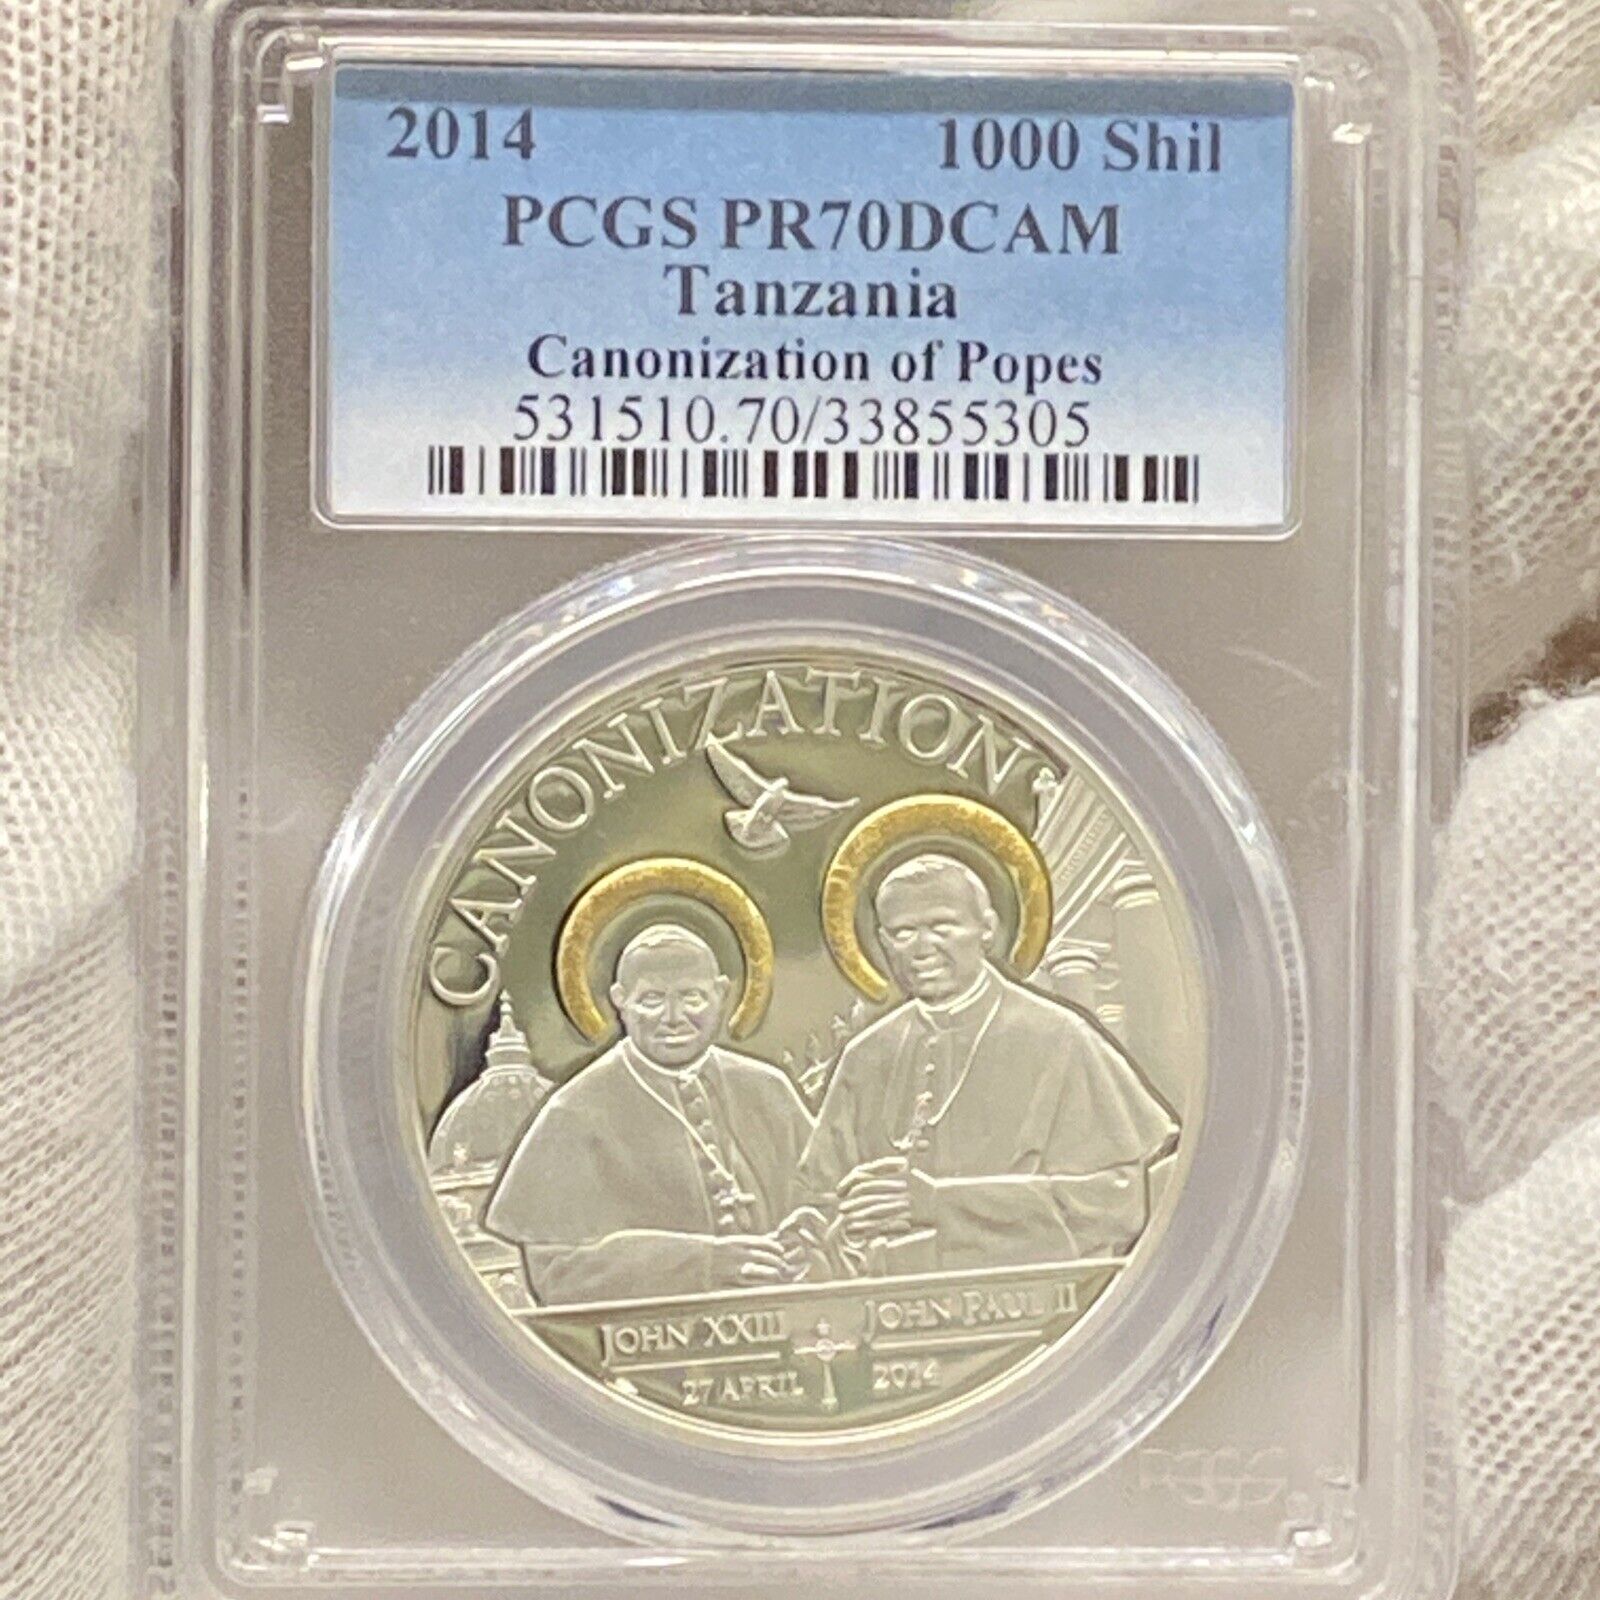 2014 1000 Shilling Tanzania Canonization Of Popes Silver Coin Pcgs pr70dcam